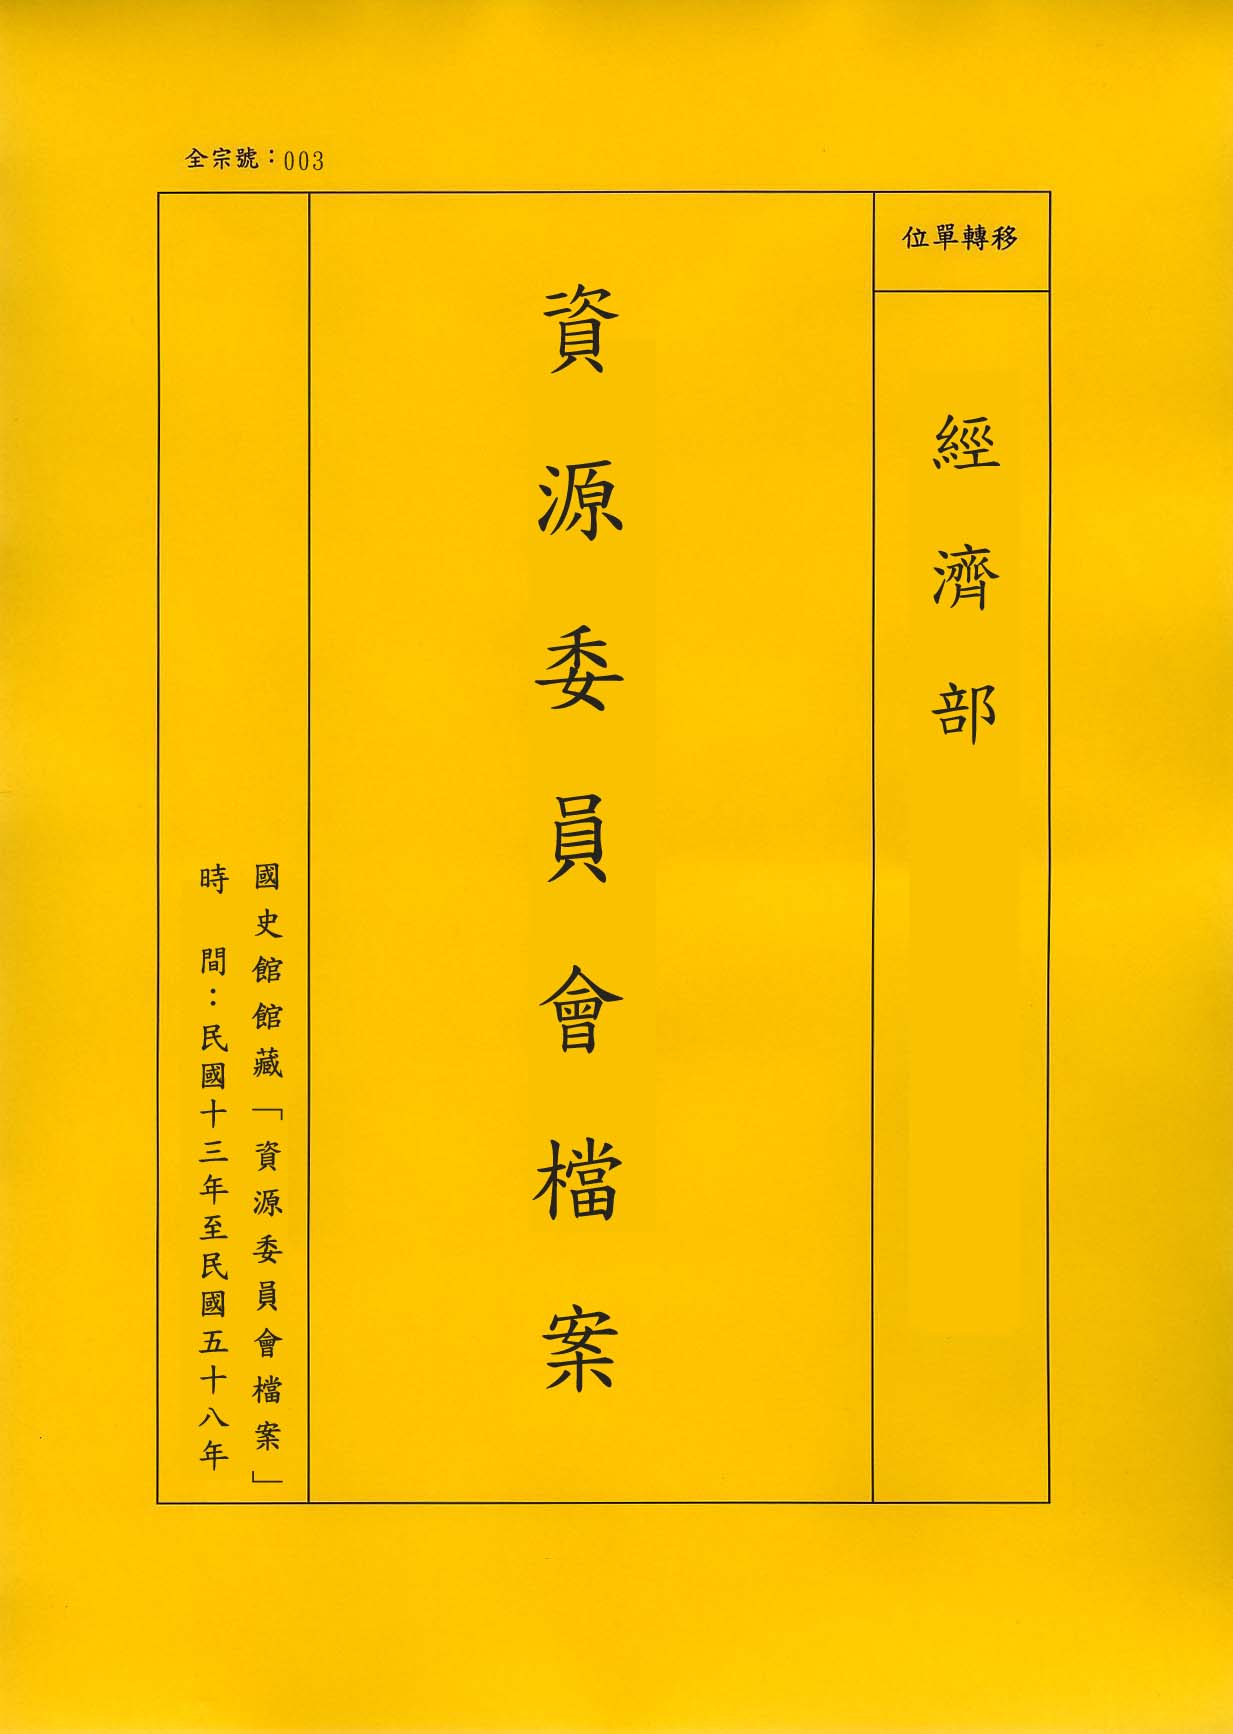 卷名:搪瓷工廠調查表─上海(003-010306-0154)